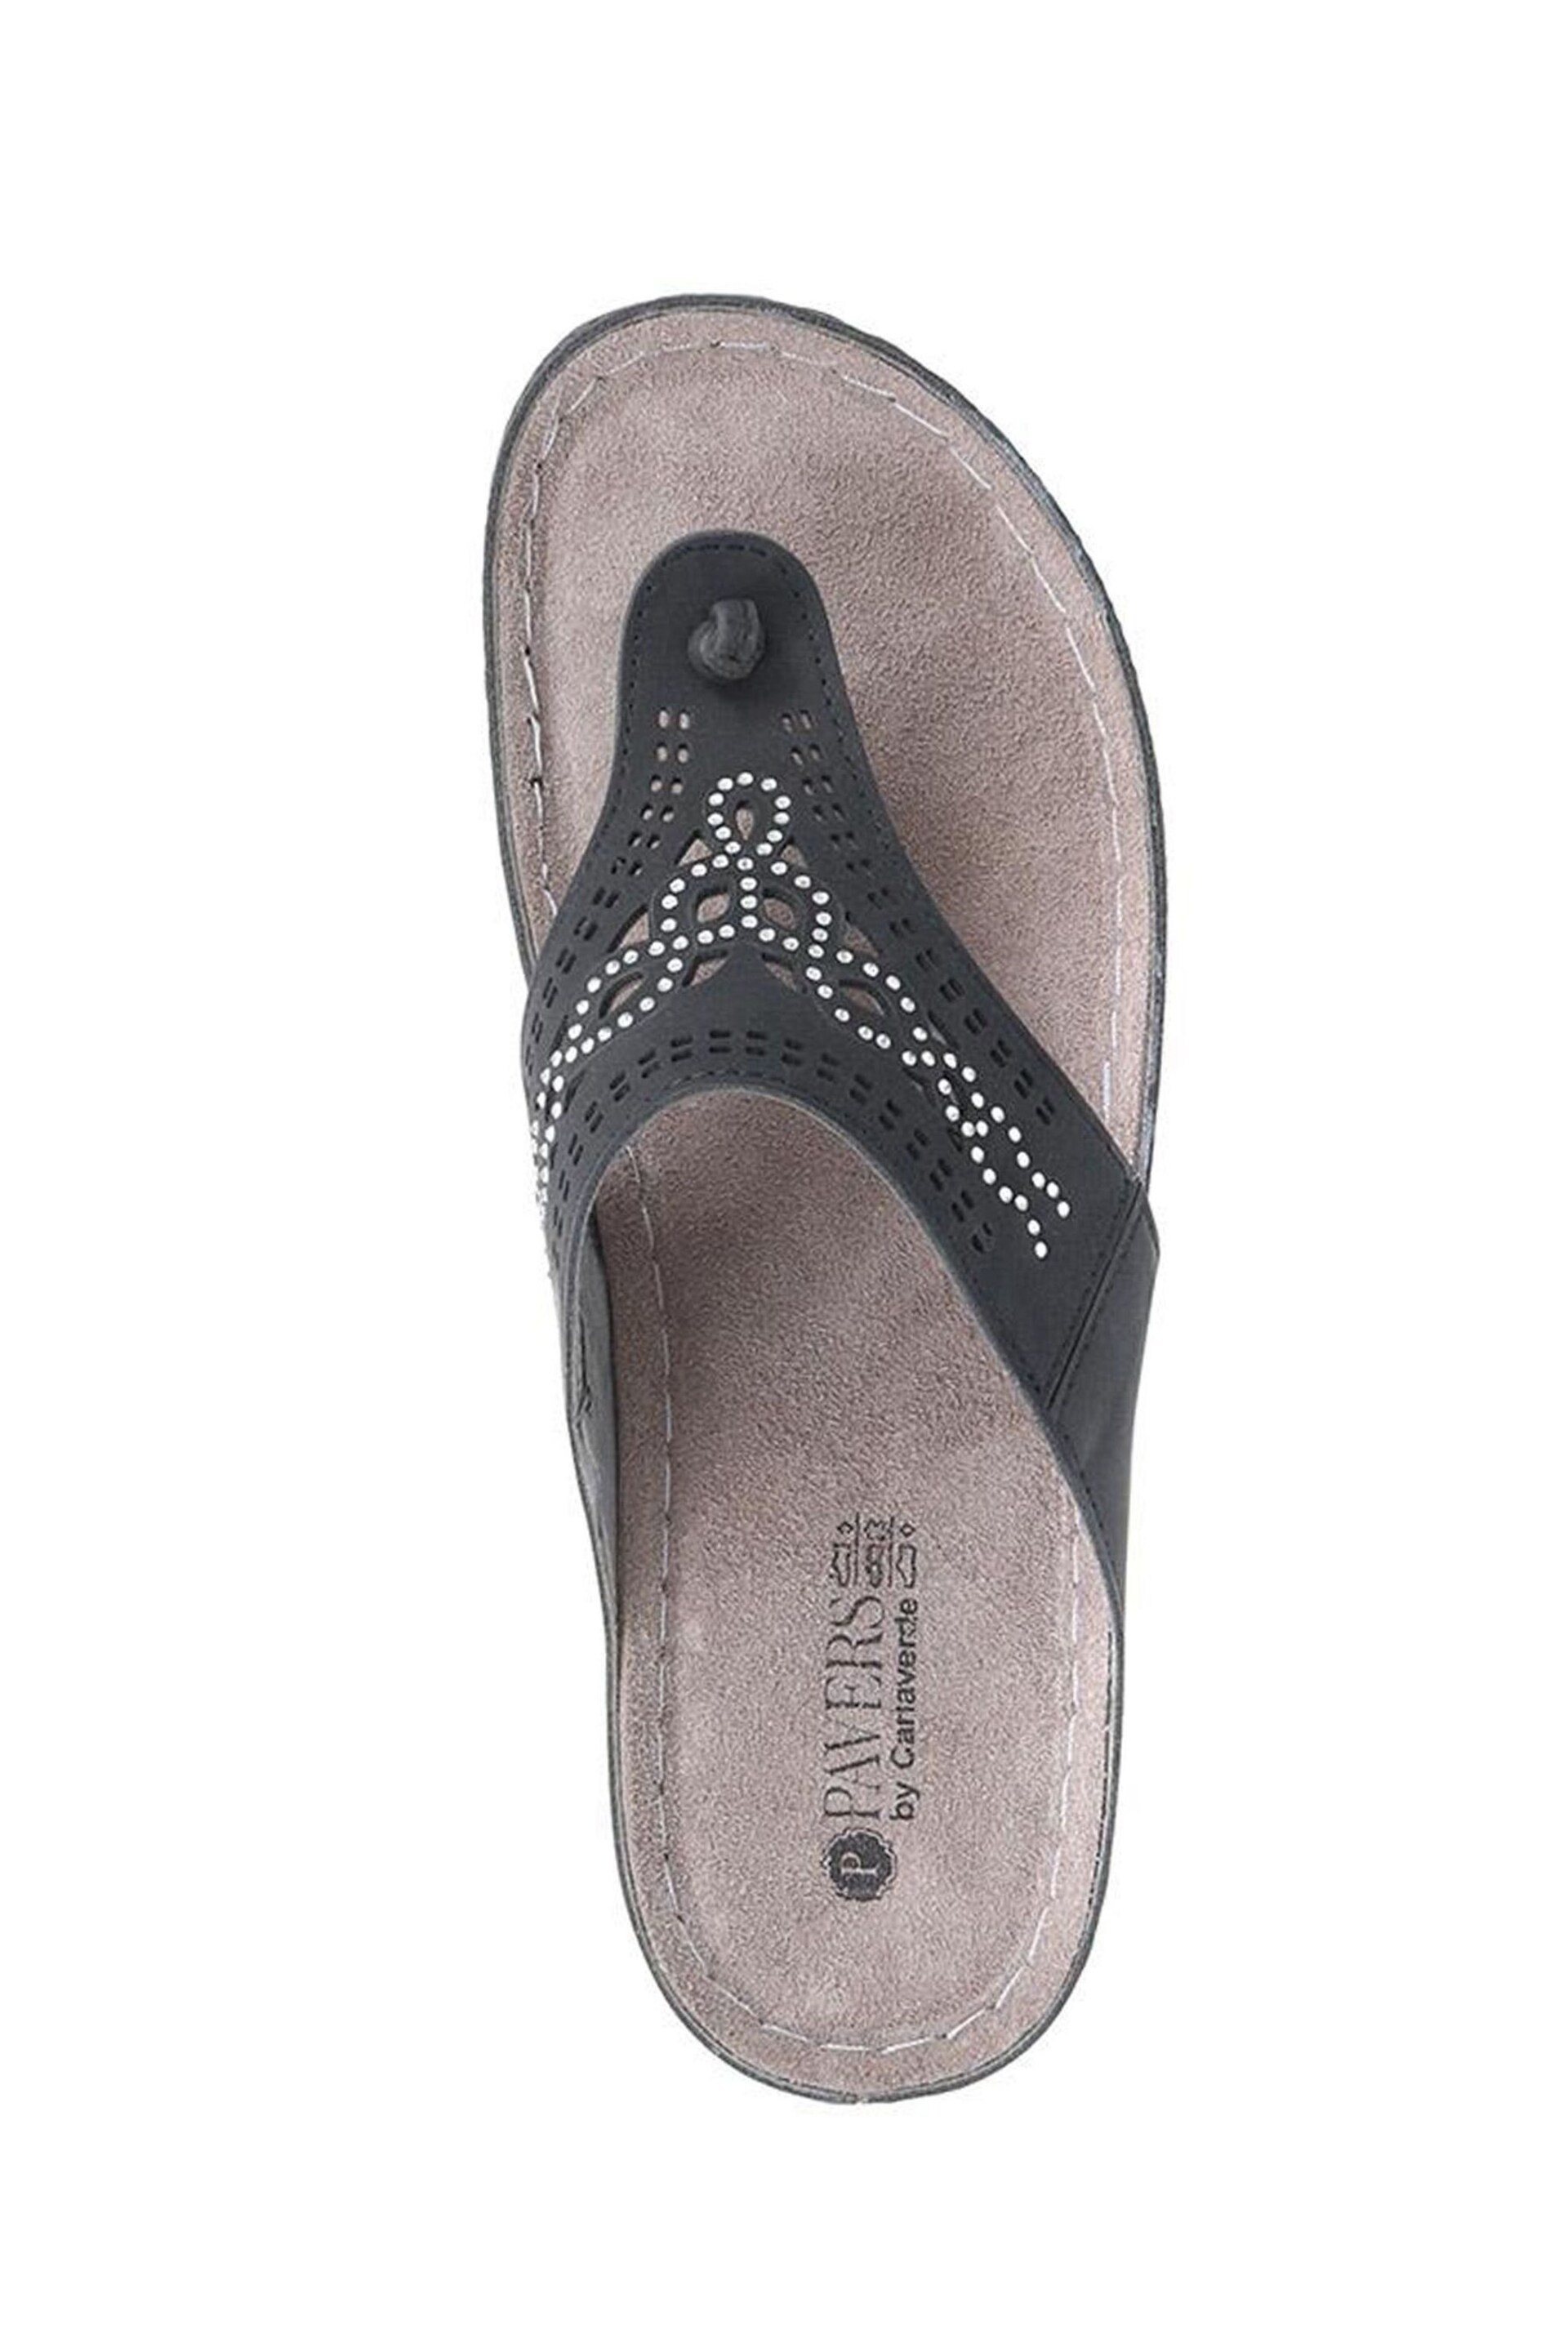 Pavers Embellished Toe Post Black Sandals - Image 4 of 5